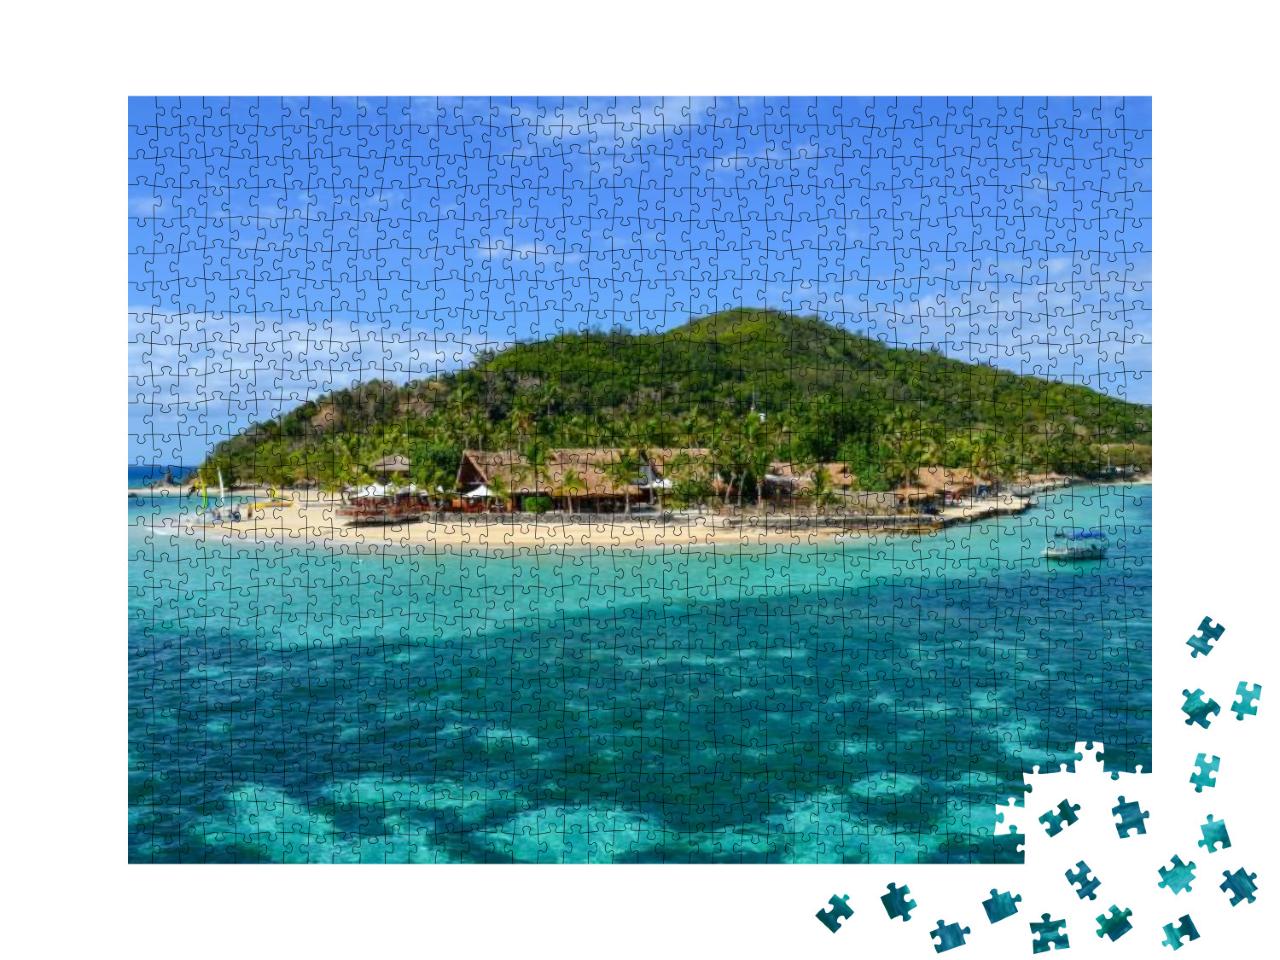 Puzzle 1000 Teile „Castaway Island, Mamanucas Inselgruppe, Fidschi“